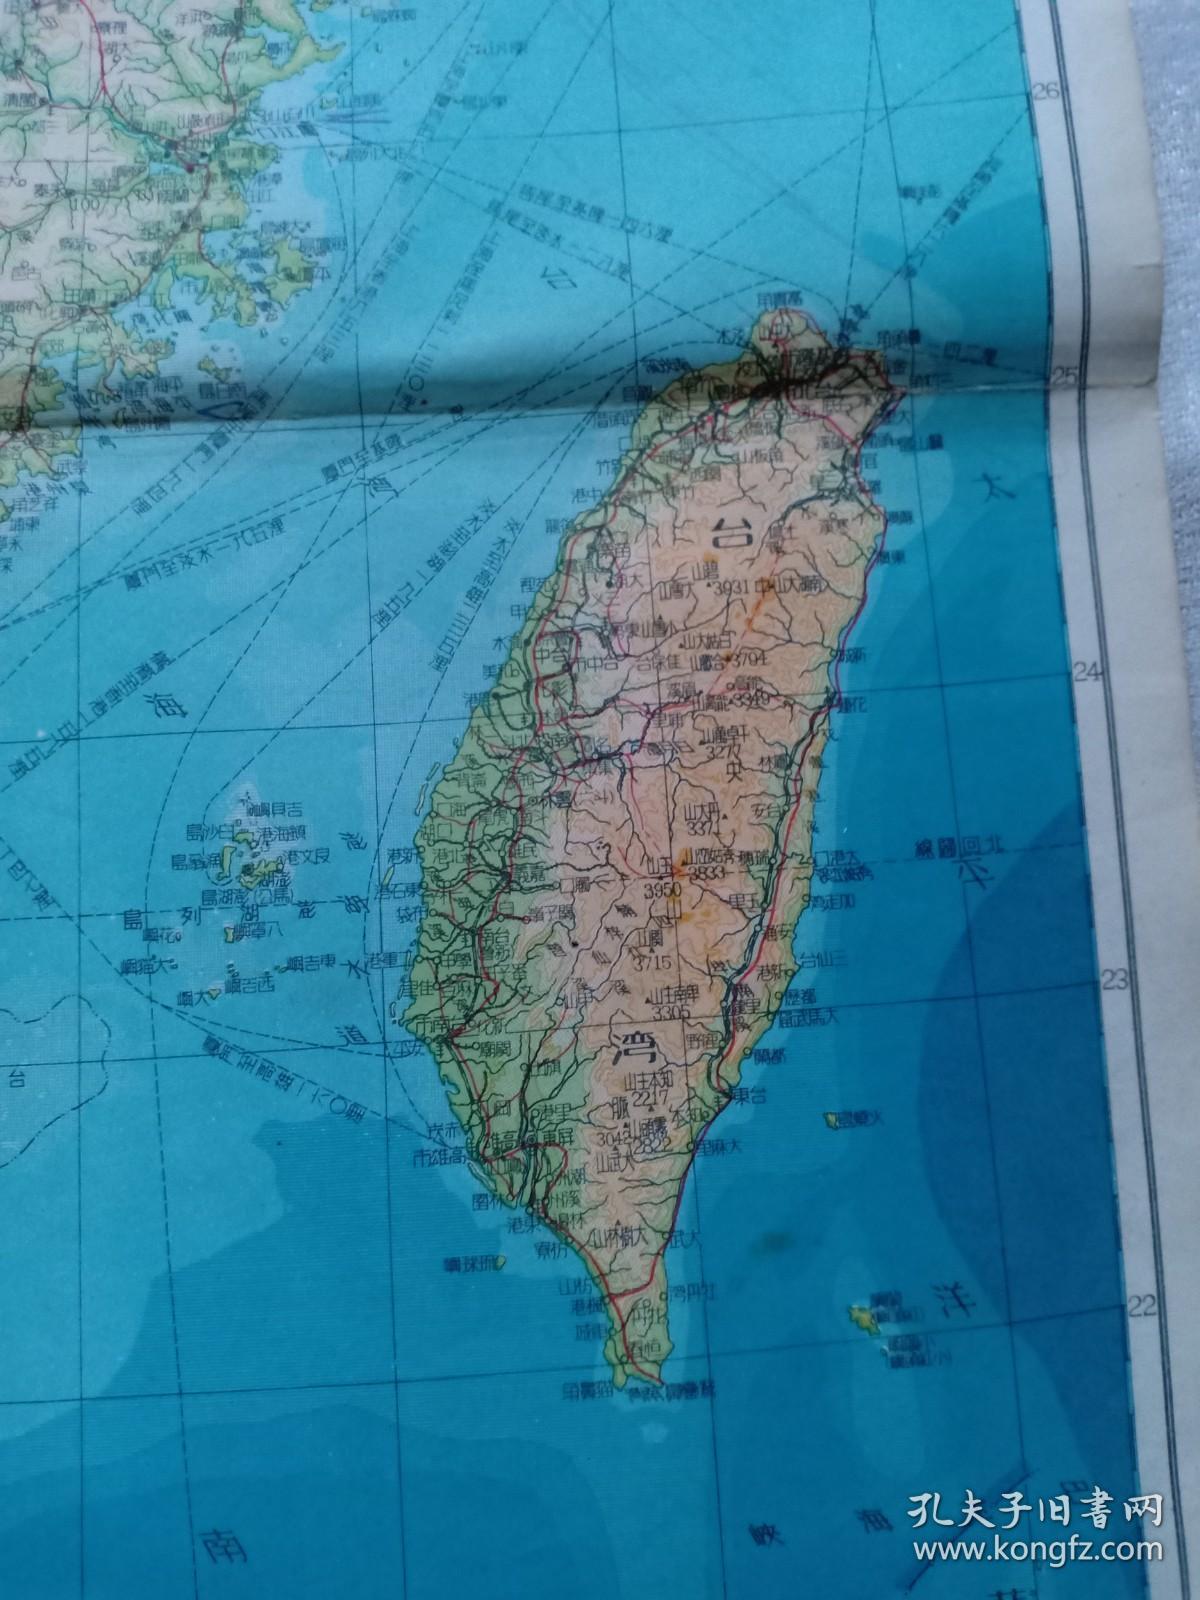 五十年代老地图 福建省地图 台湾省地图 8开 37.8x26.3cm 1953年6月印制